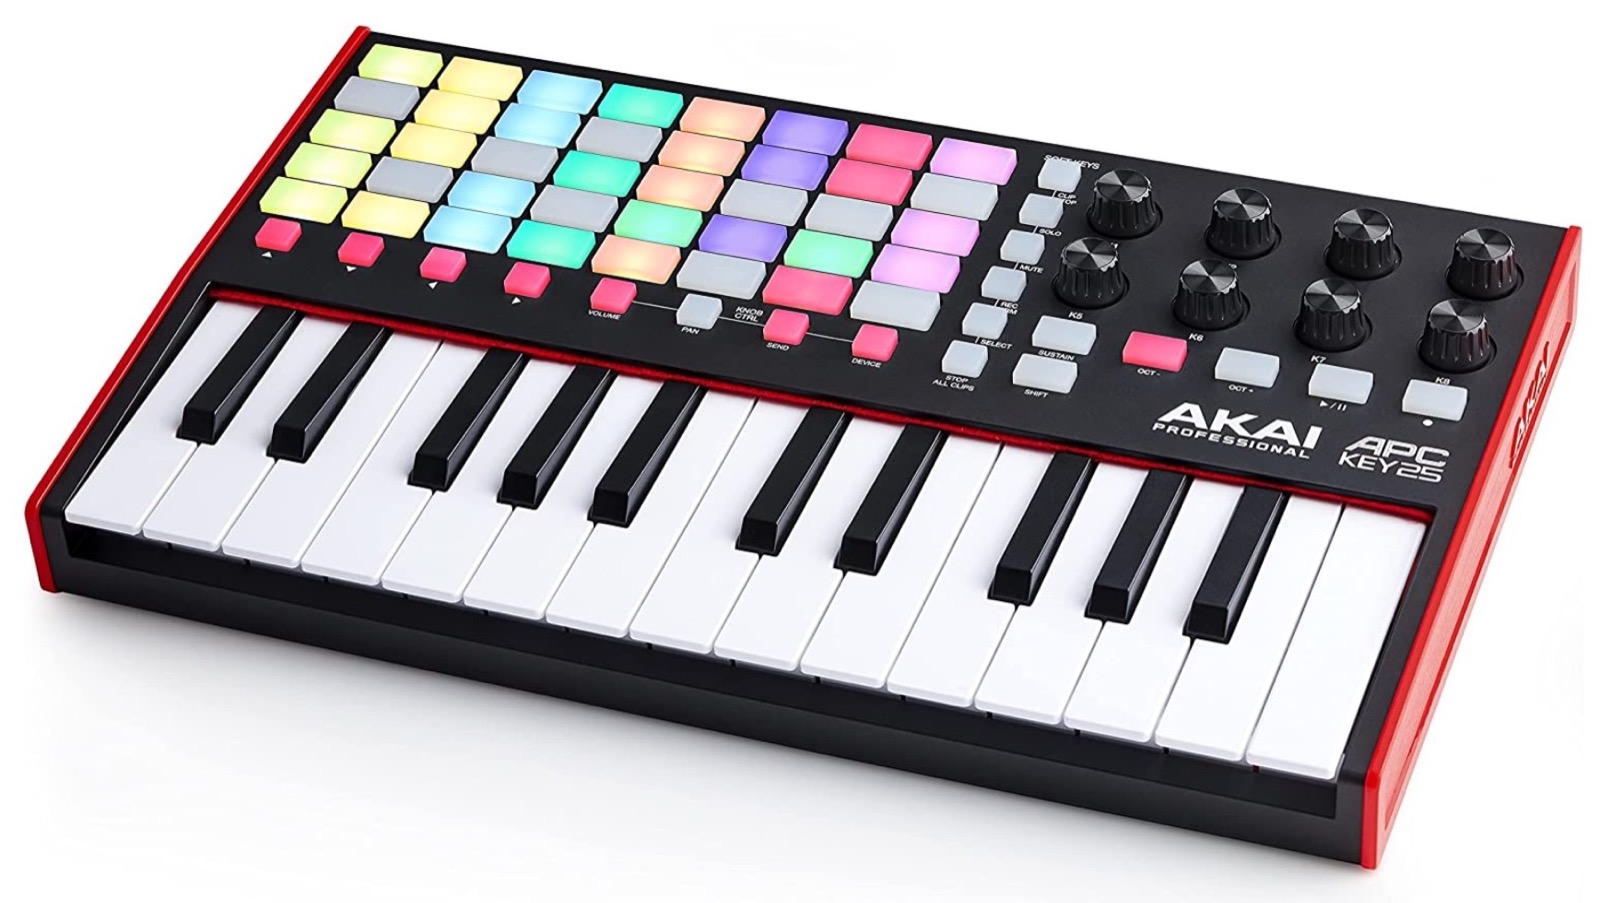 AKAI APC Key 25 MK2, tastiera MIDI perfetta per Ableton Live